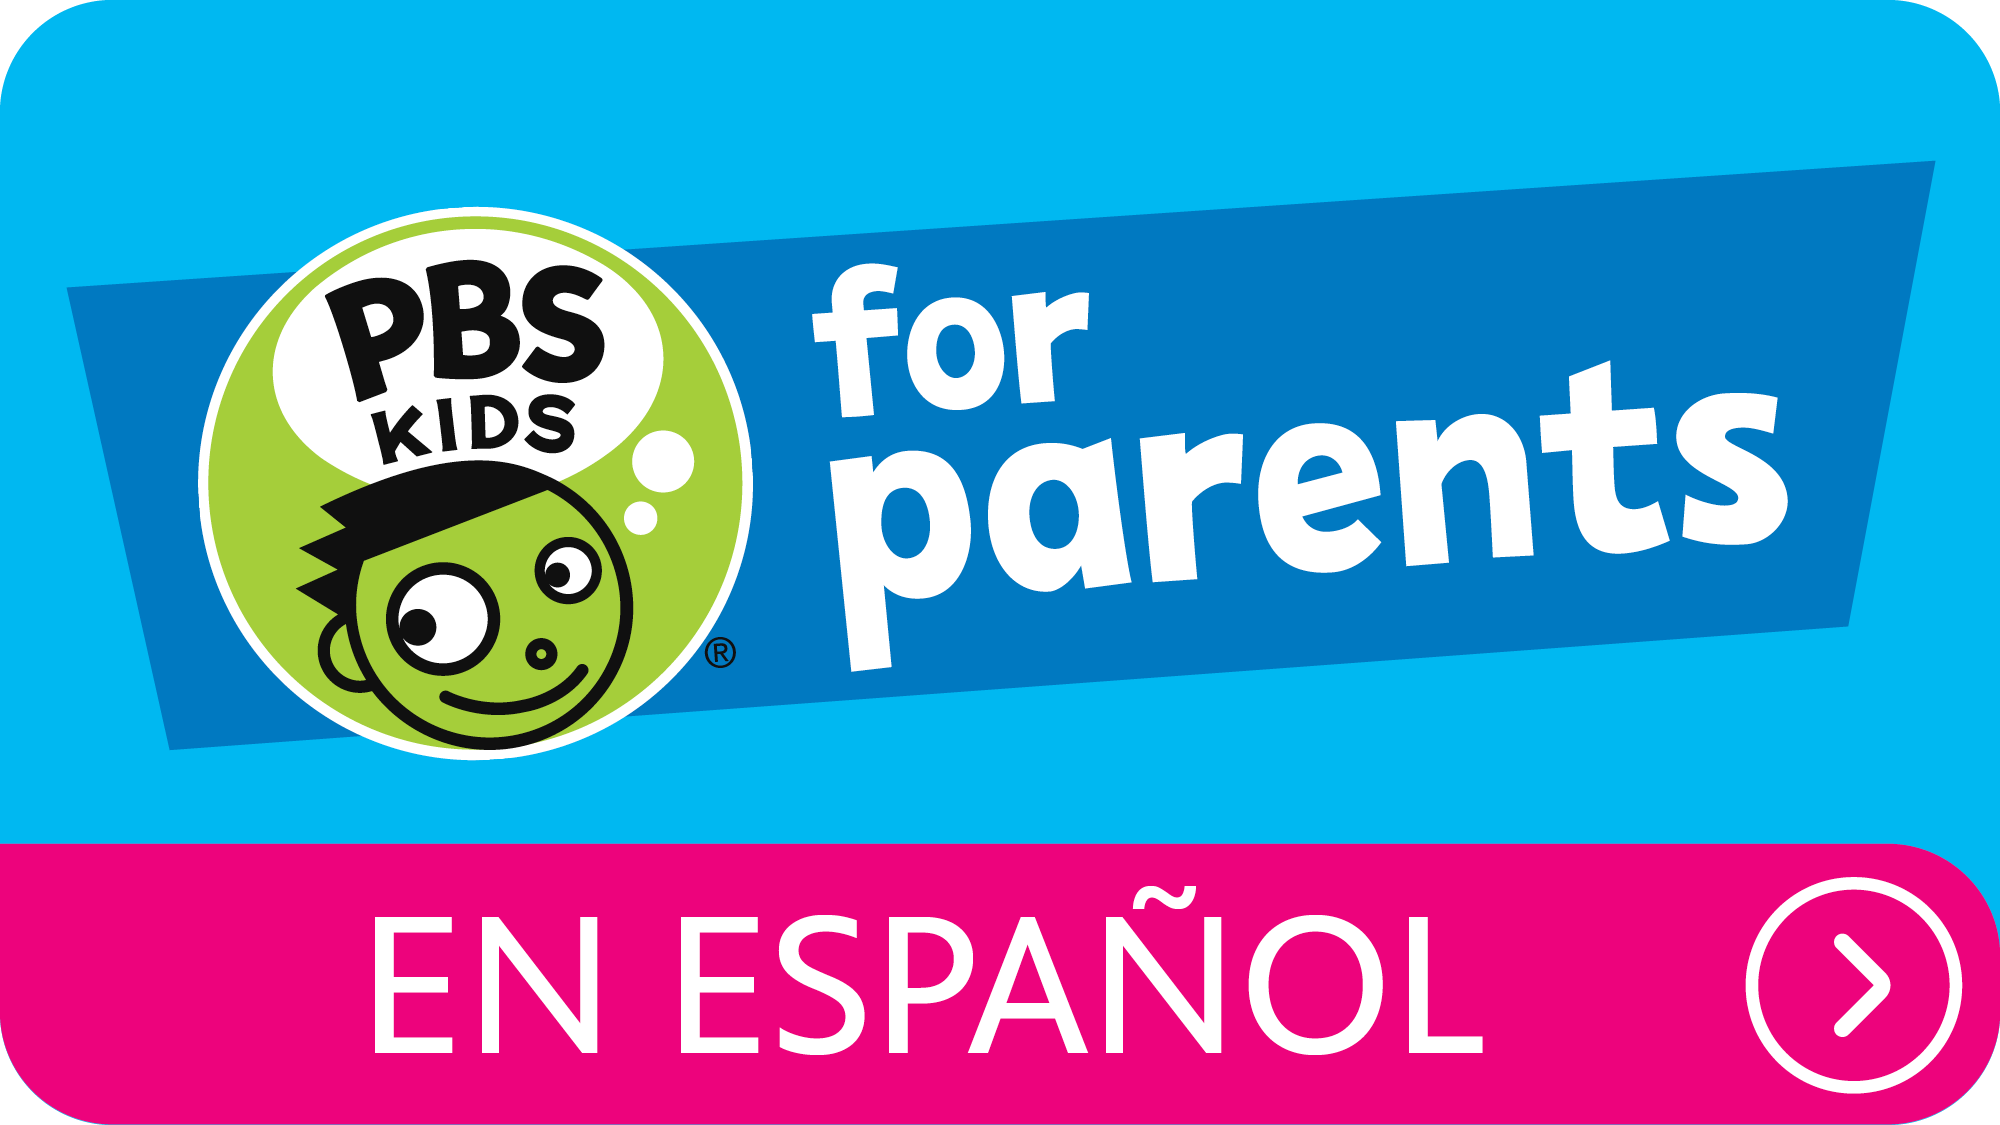 PBS KIDS for Parents en Español